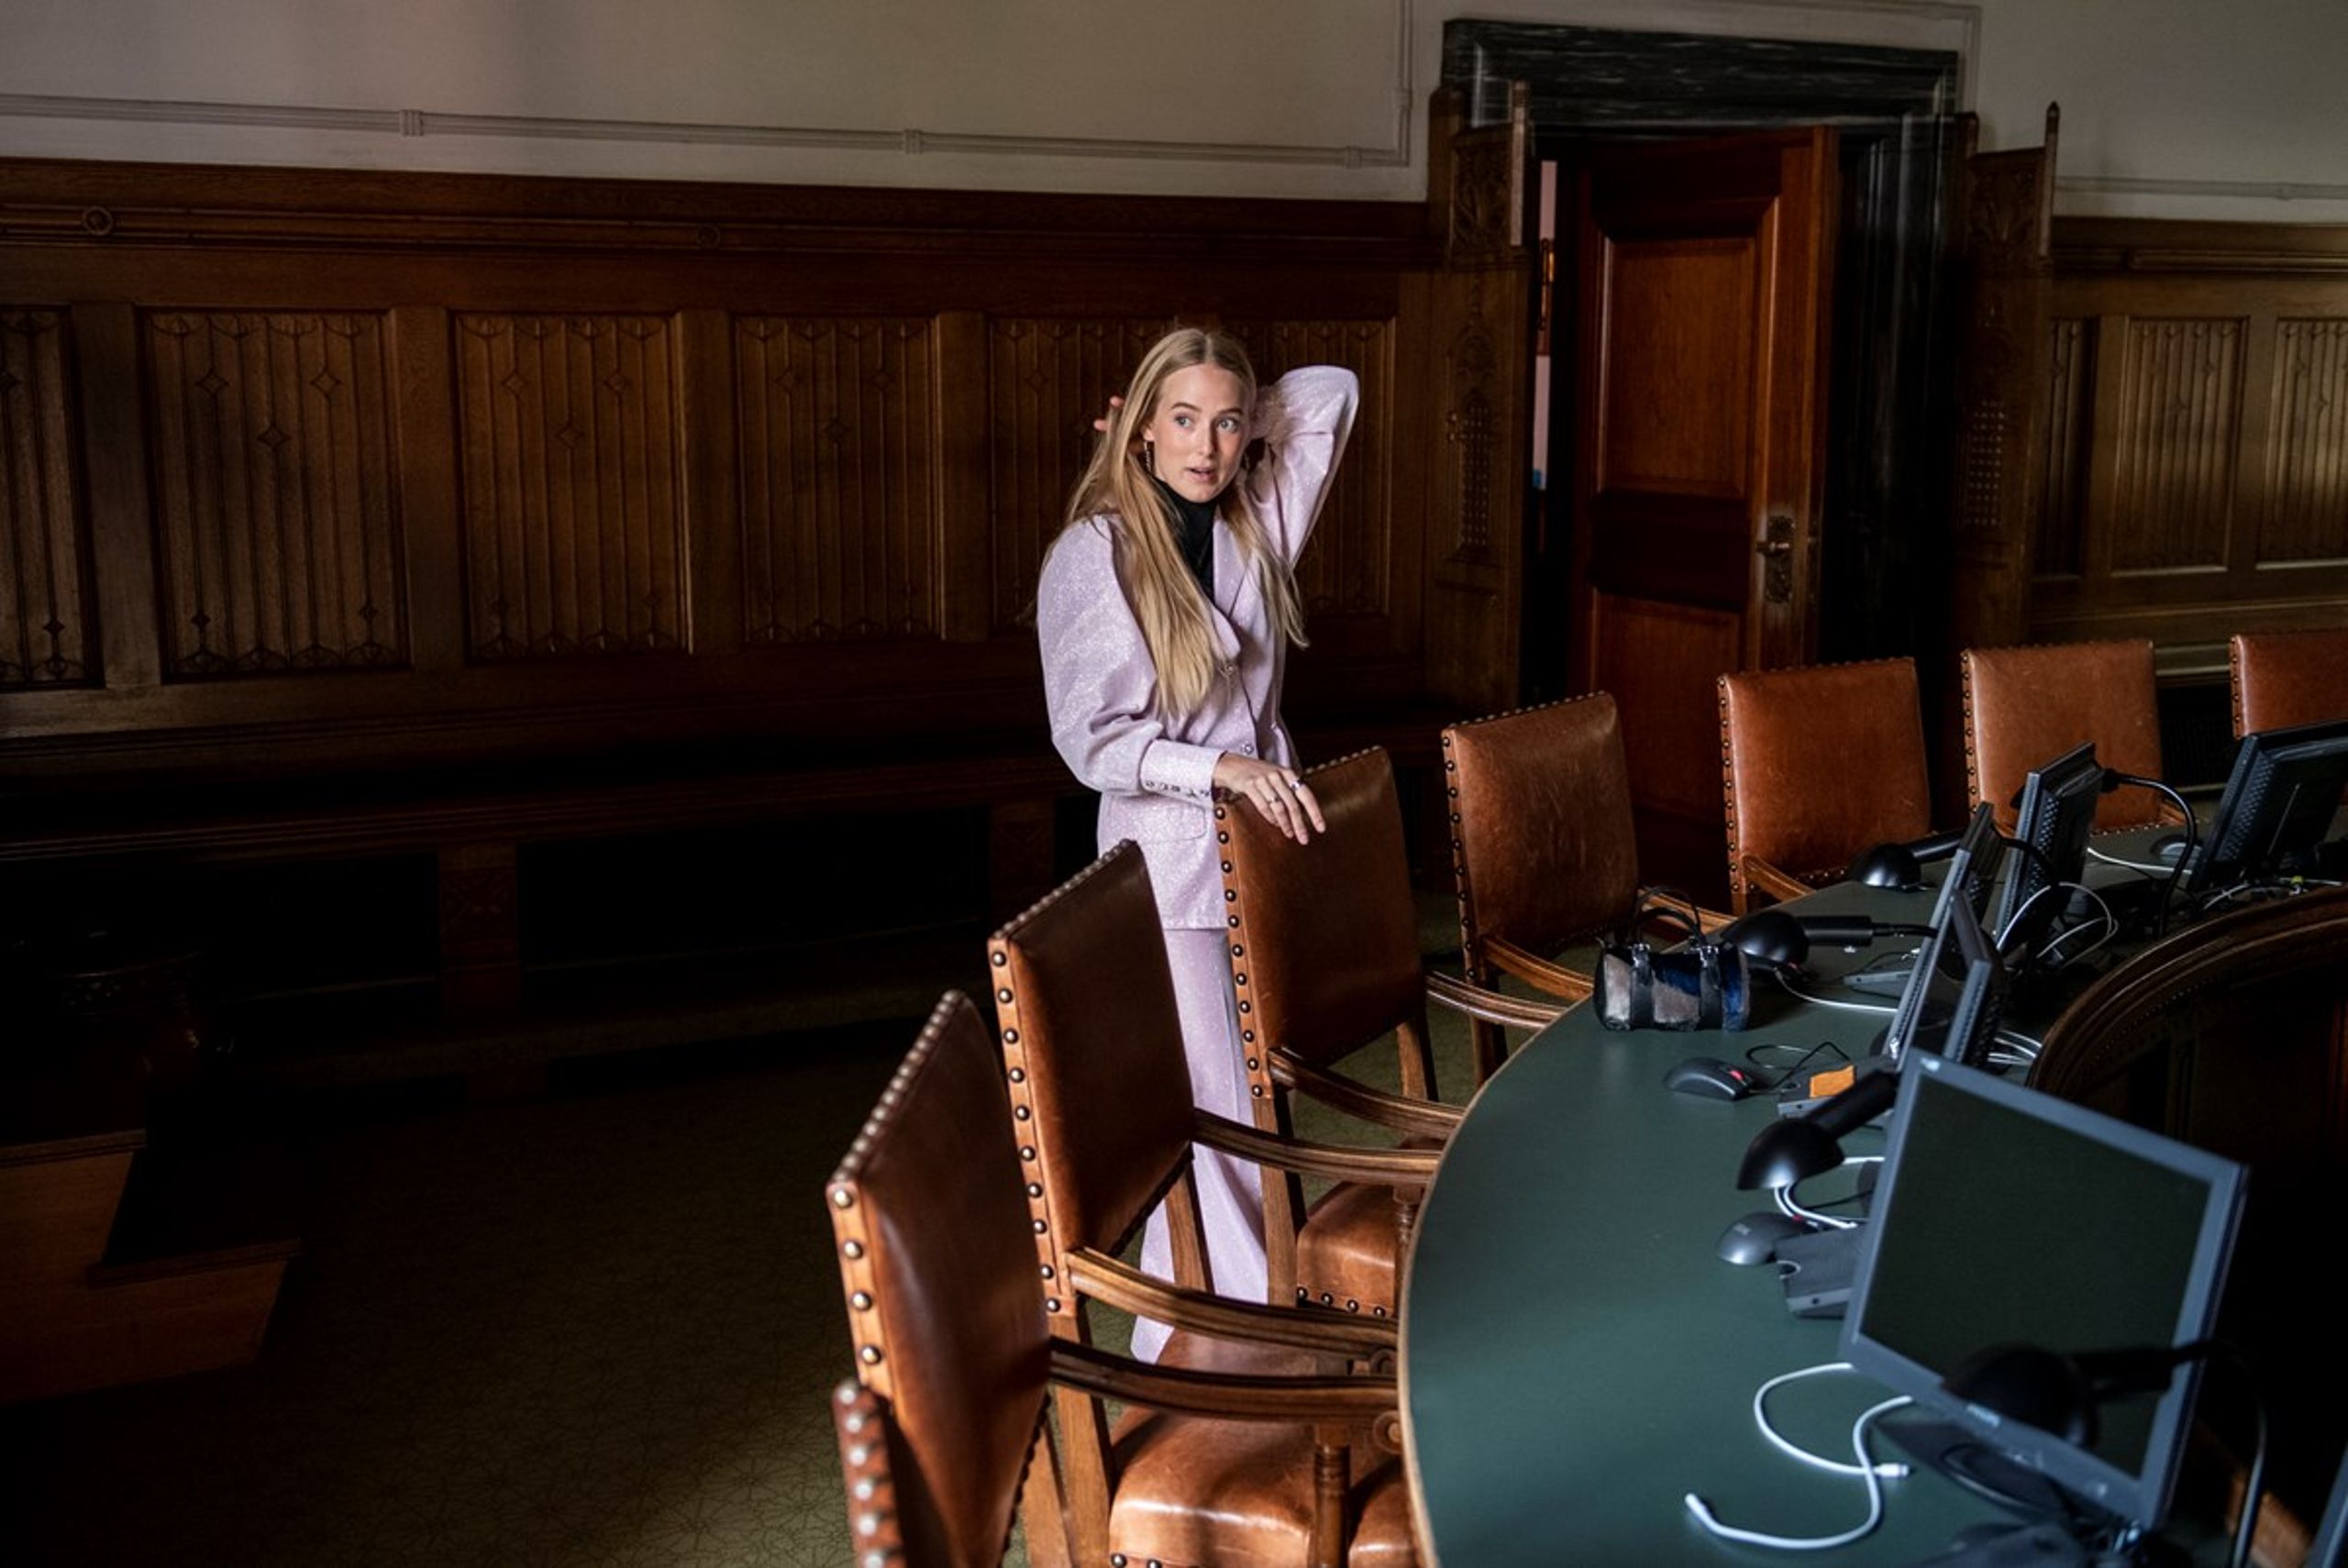 Til kommunalvalget i 2021 bliver Cille Hald Egholm (V) valgt ind på et mandat, der flipper til Venstre i sidste øjeblik. I dag er hun medlem af Borgerrepræsentationen i Københavns Kommune og sidder i socialudvalget.